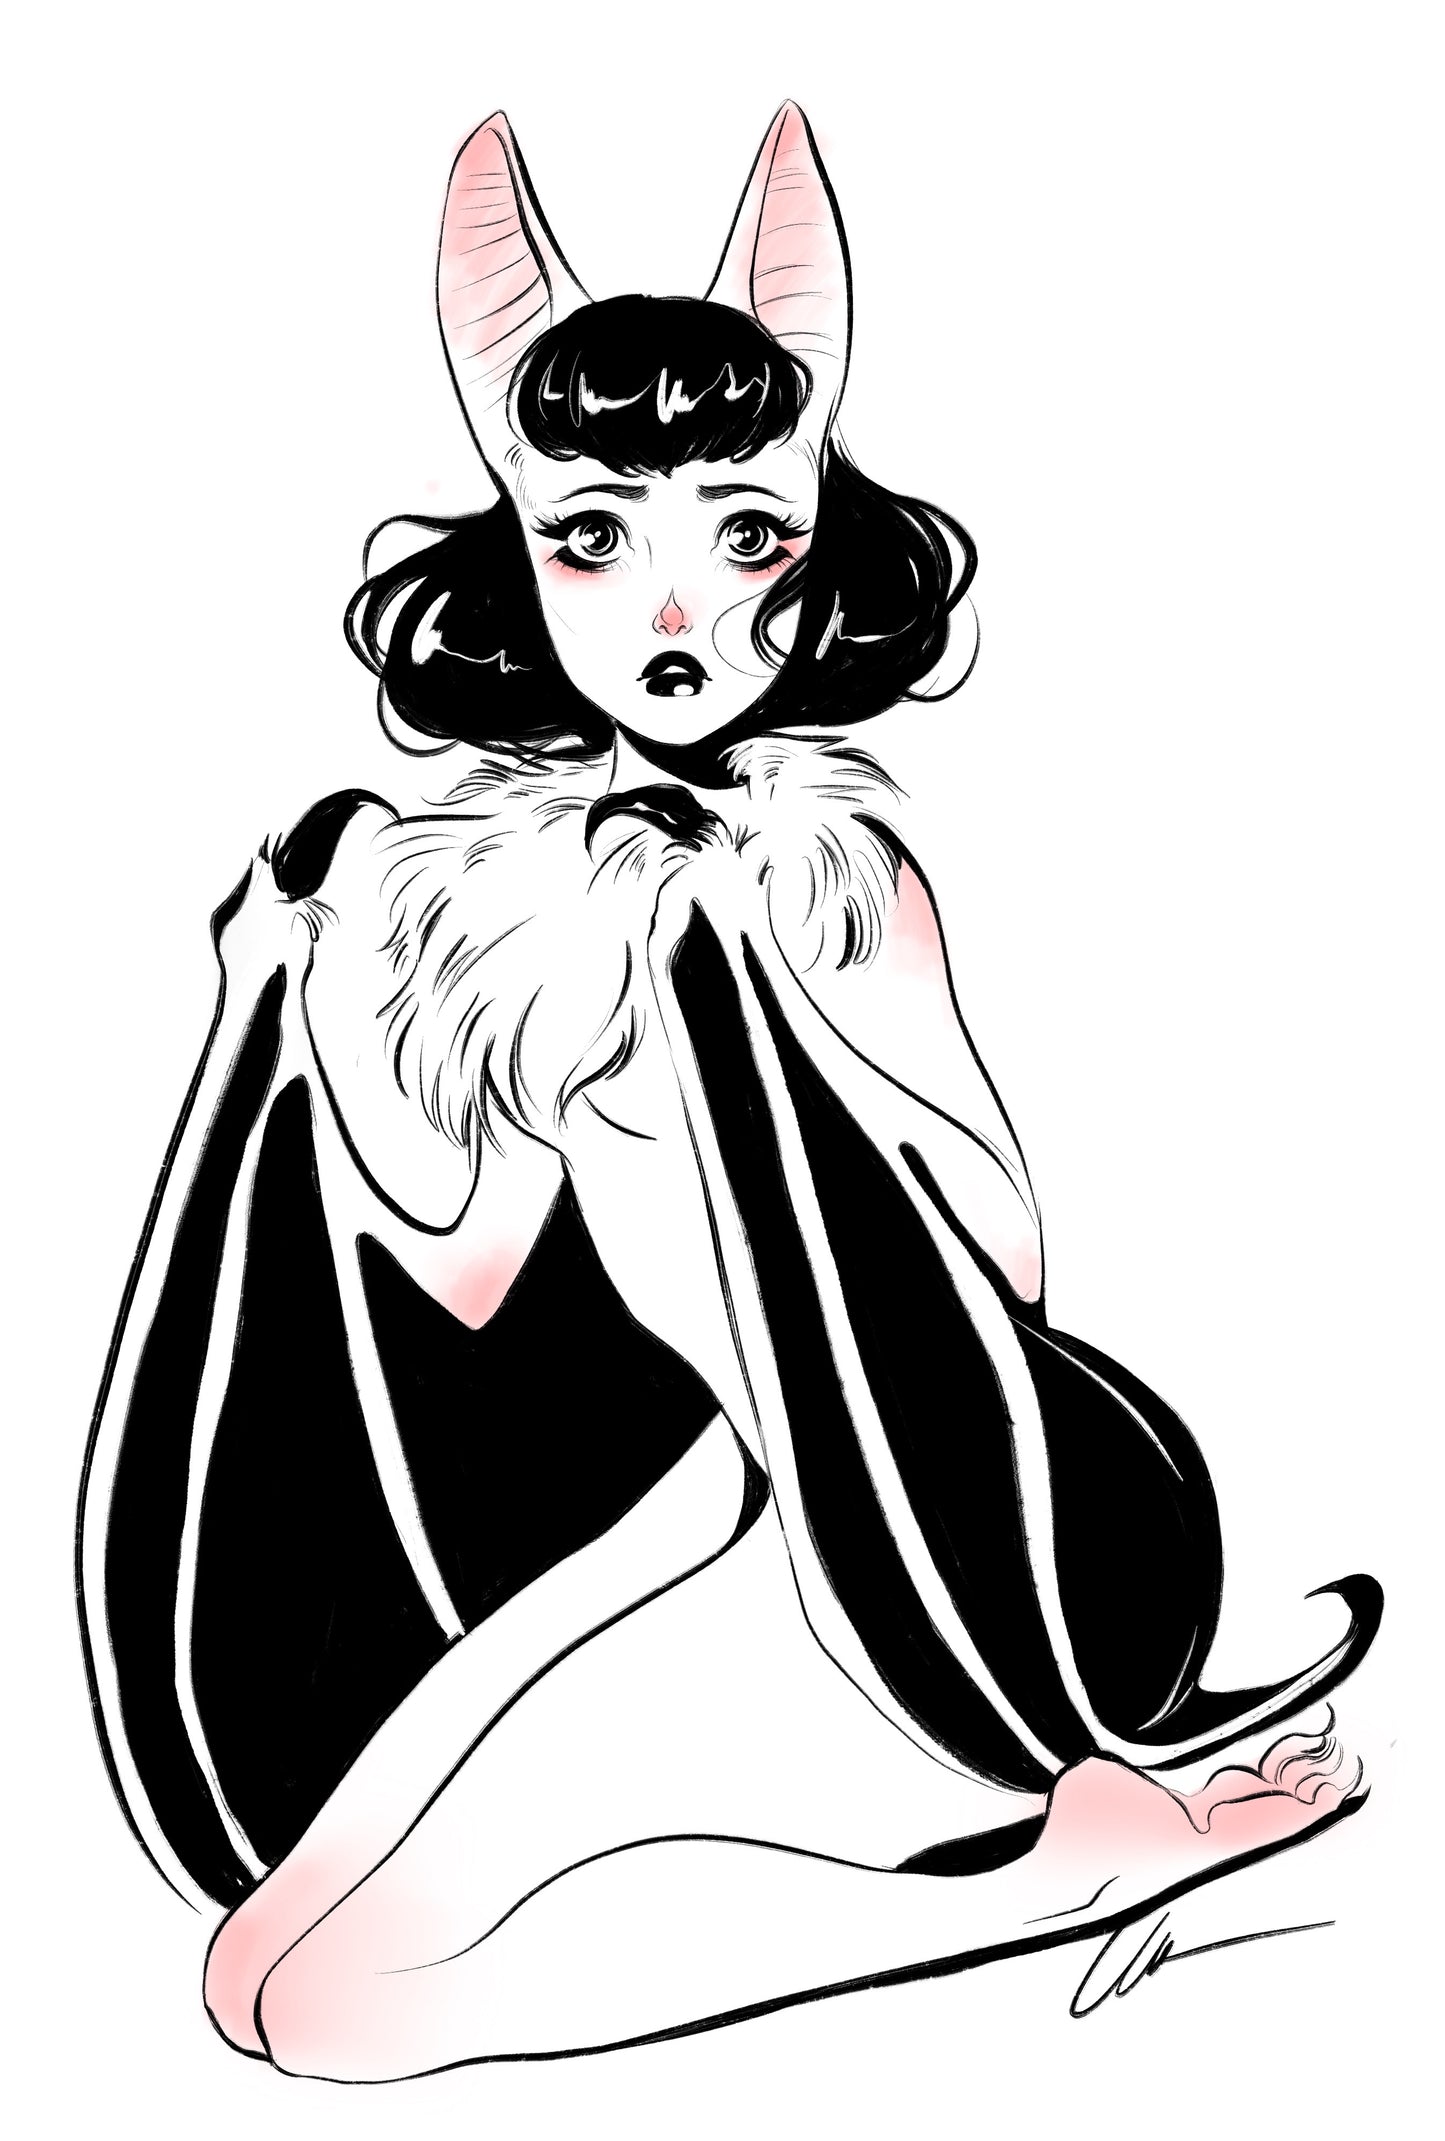 Bat Girl